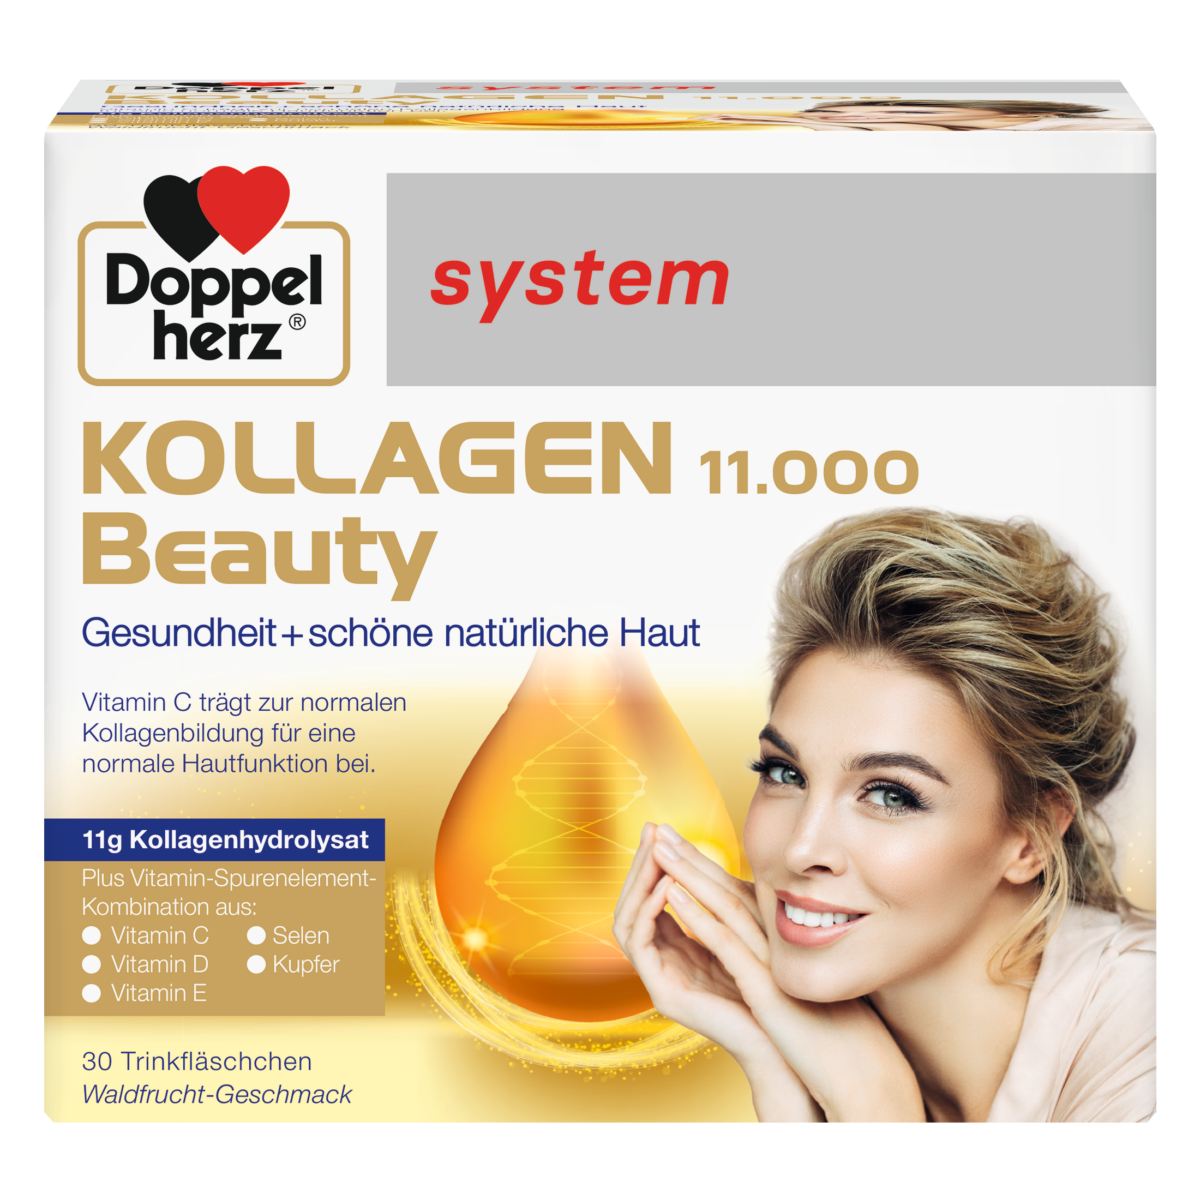 Doppelherz system Kollagen 11000 Beauty 30 ampula